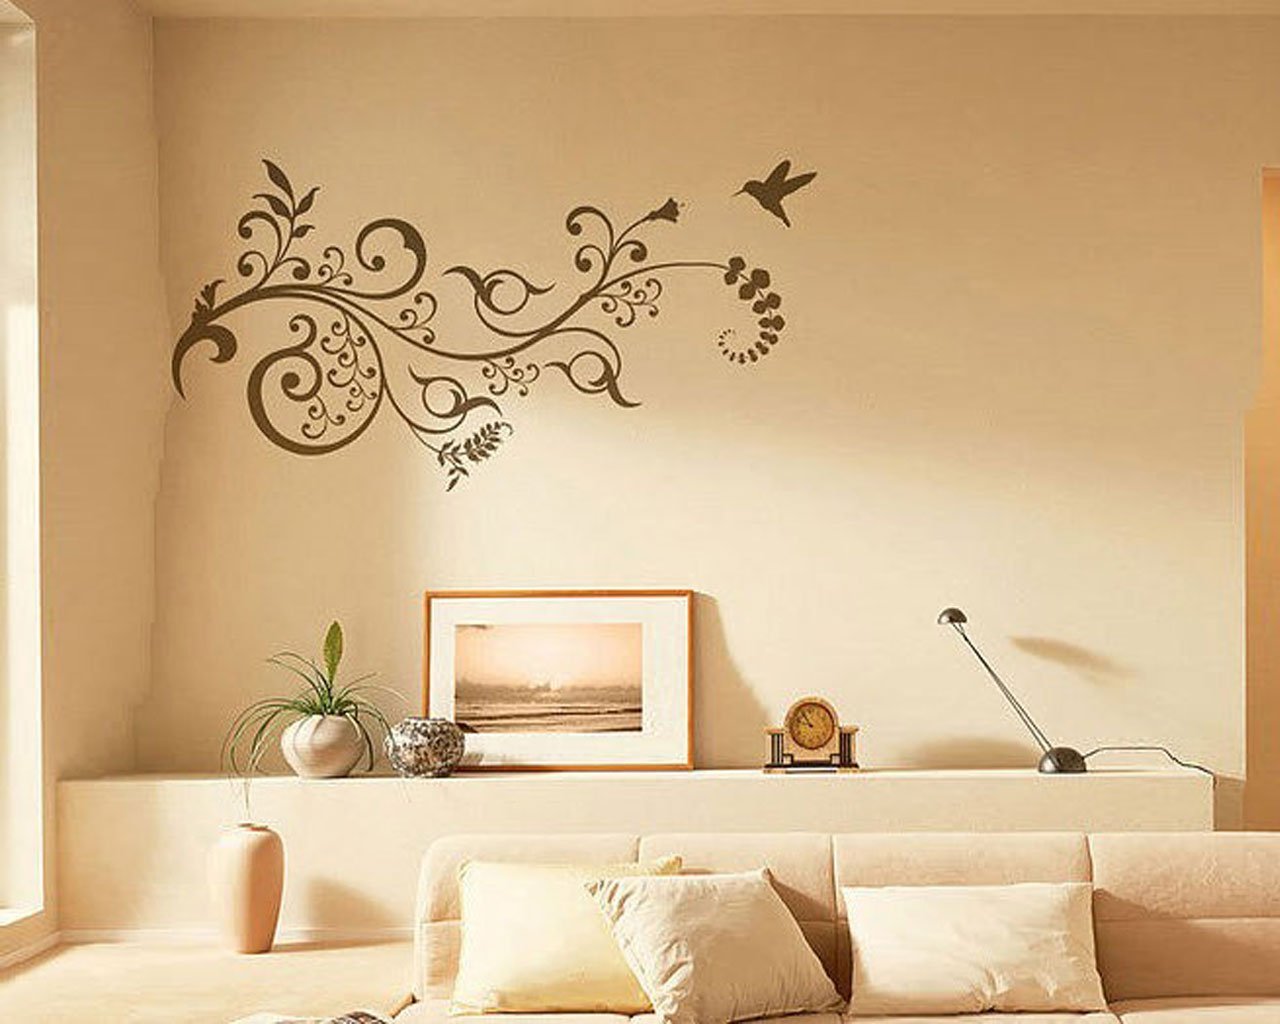 Покраше ая стена. Орнамент на стене. Украшение стен в квартире. Растительный орнамент на стене. Стена для рисования.